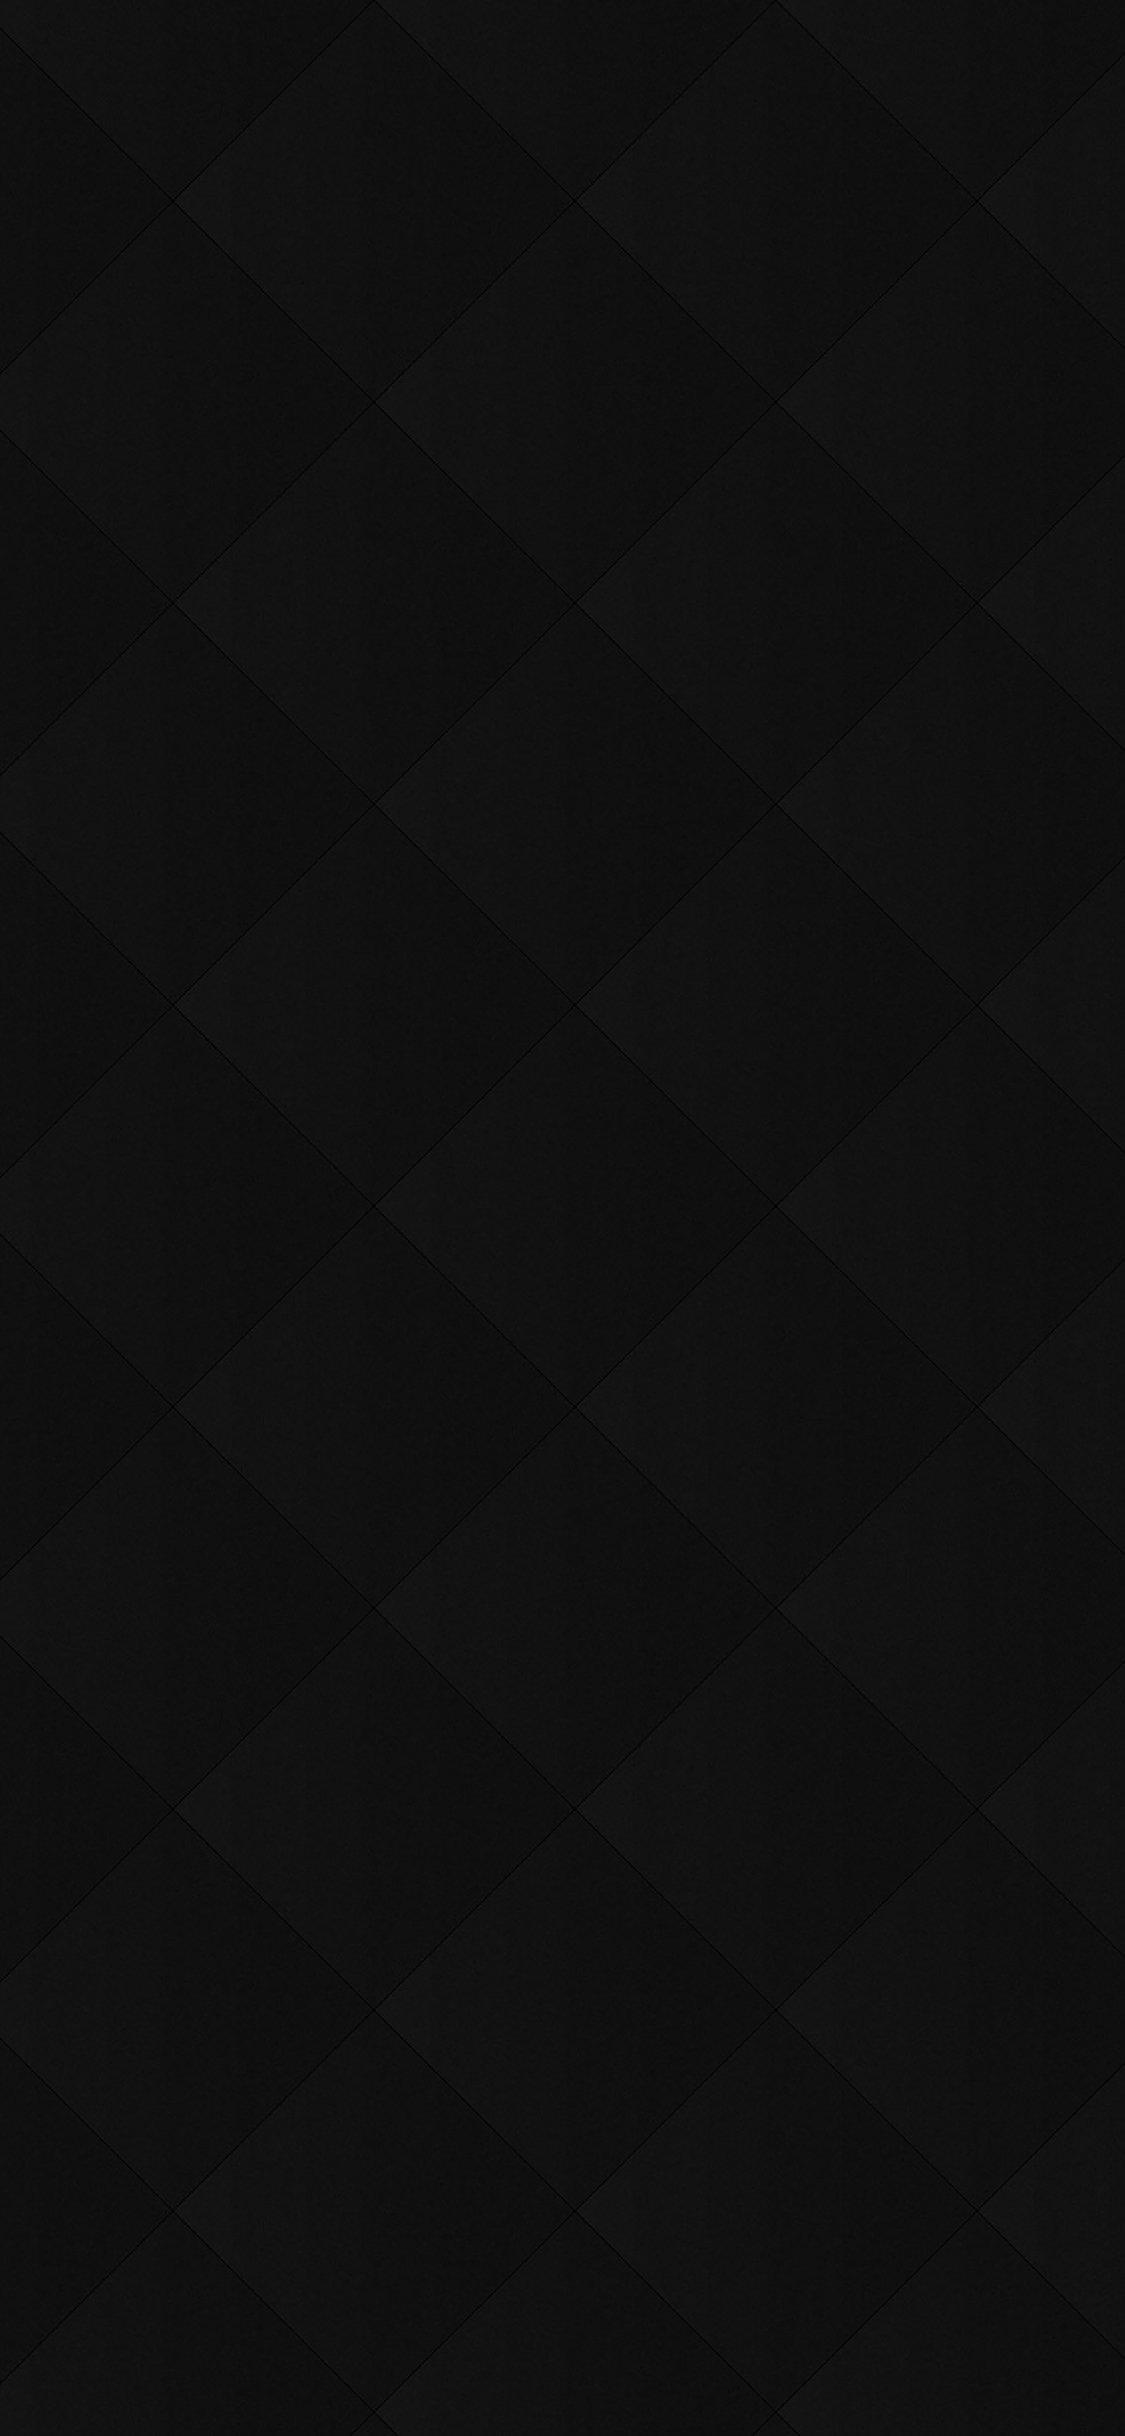 Best Black iPhone X Wallpaper Free HD